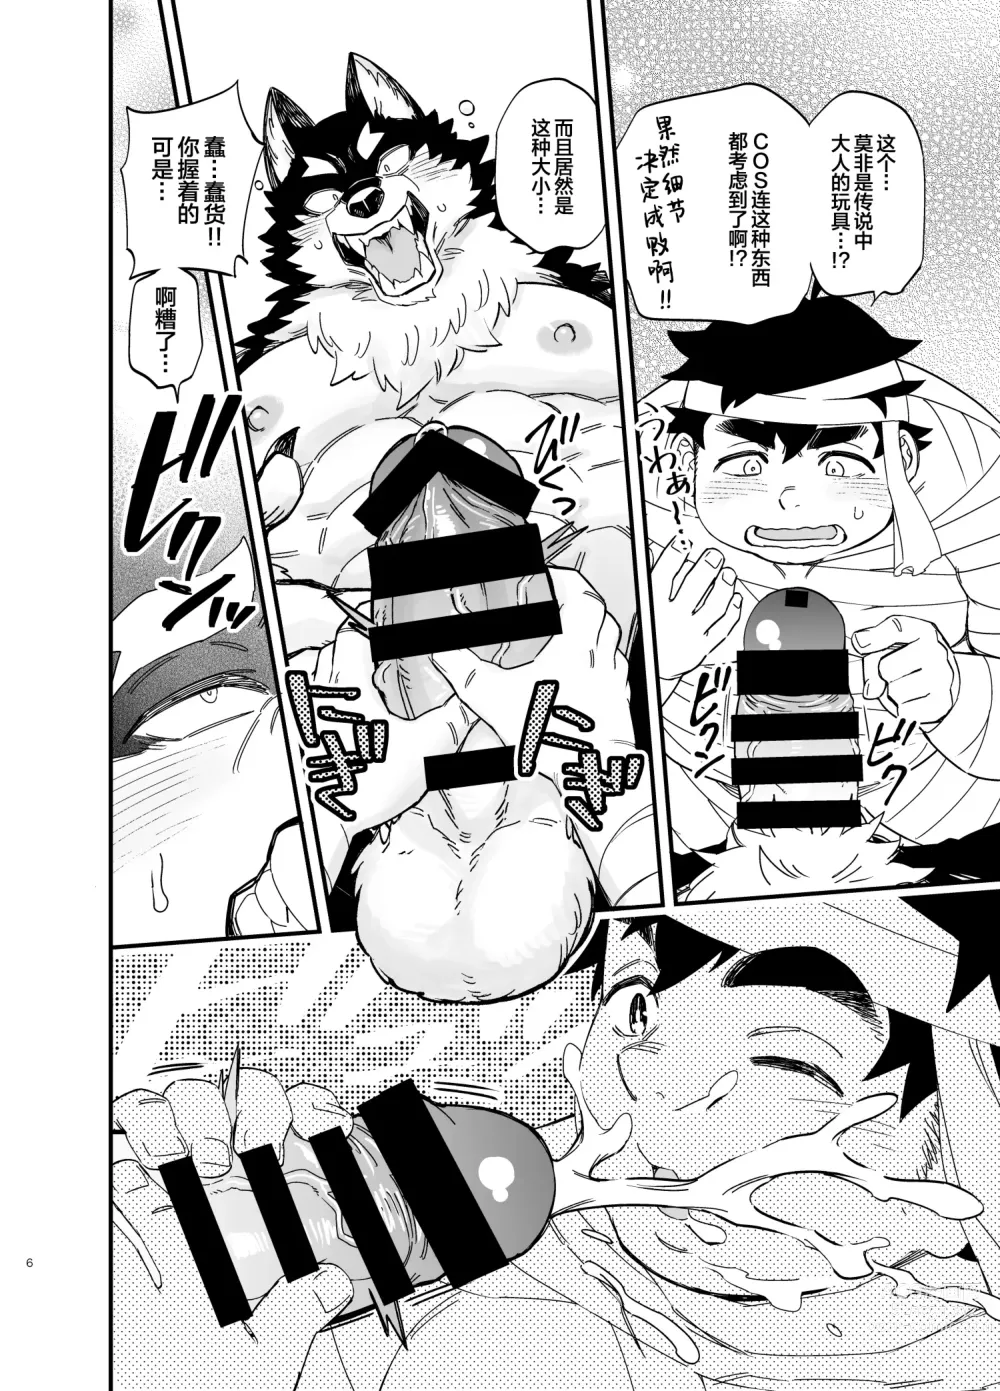 Page 7 of manga オオカミなんかこわくない！